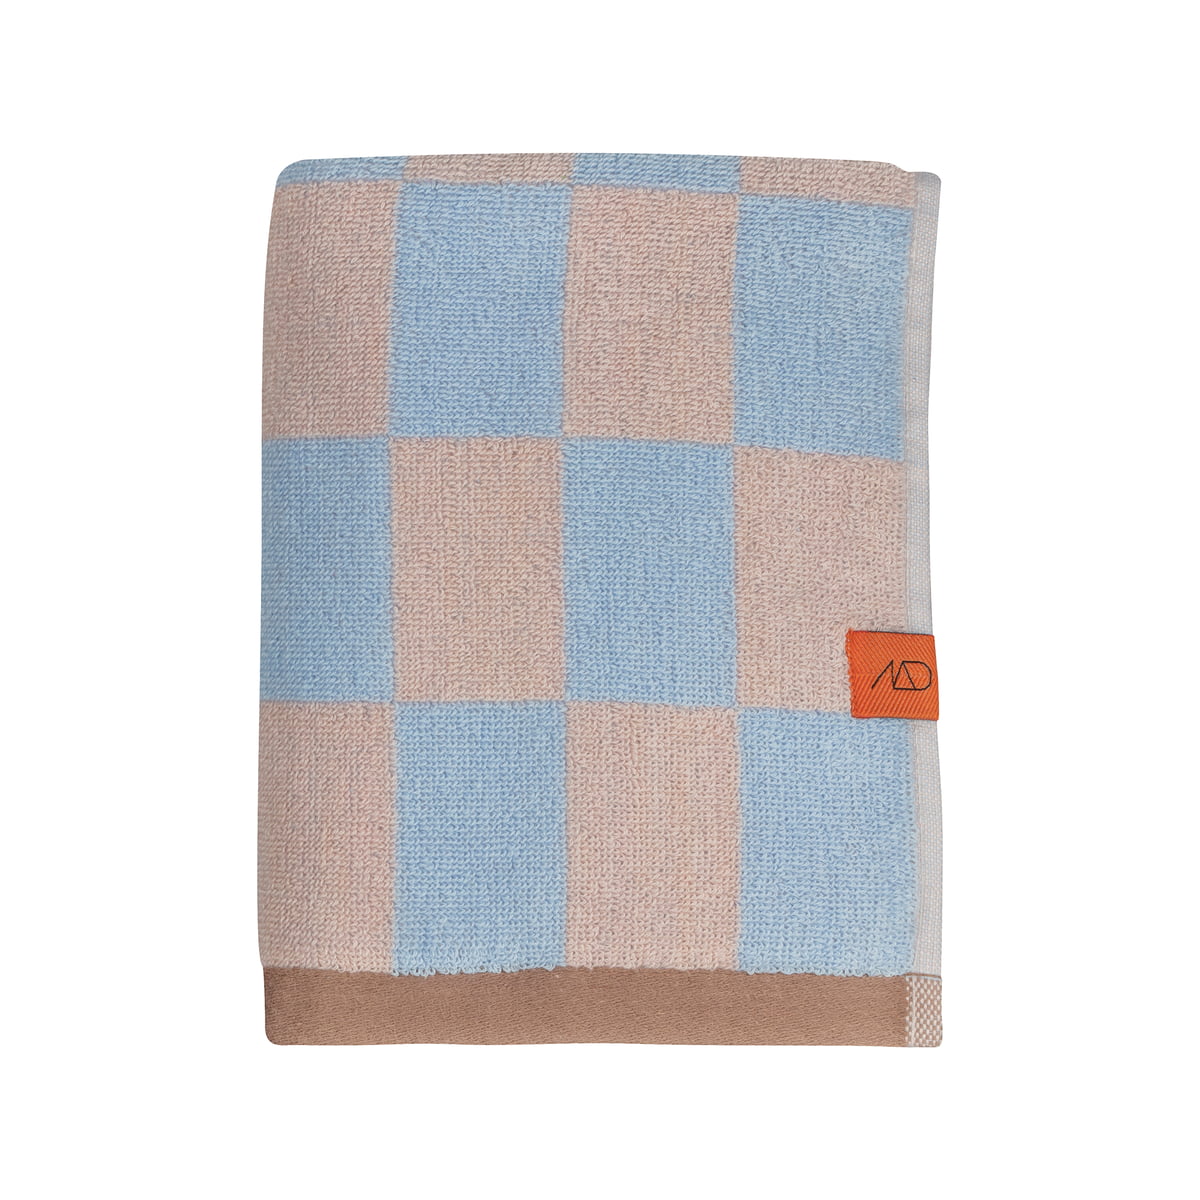 mette ditmer - retro serviette de bain, 50 cm x 90 cm, light blue